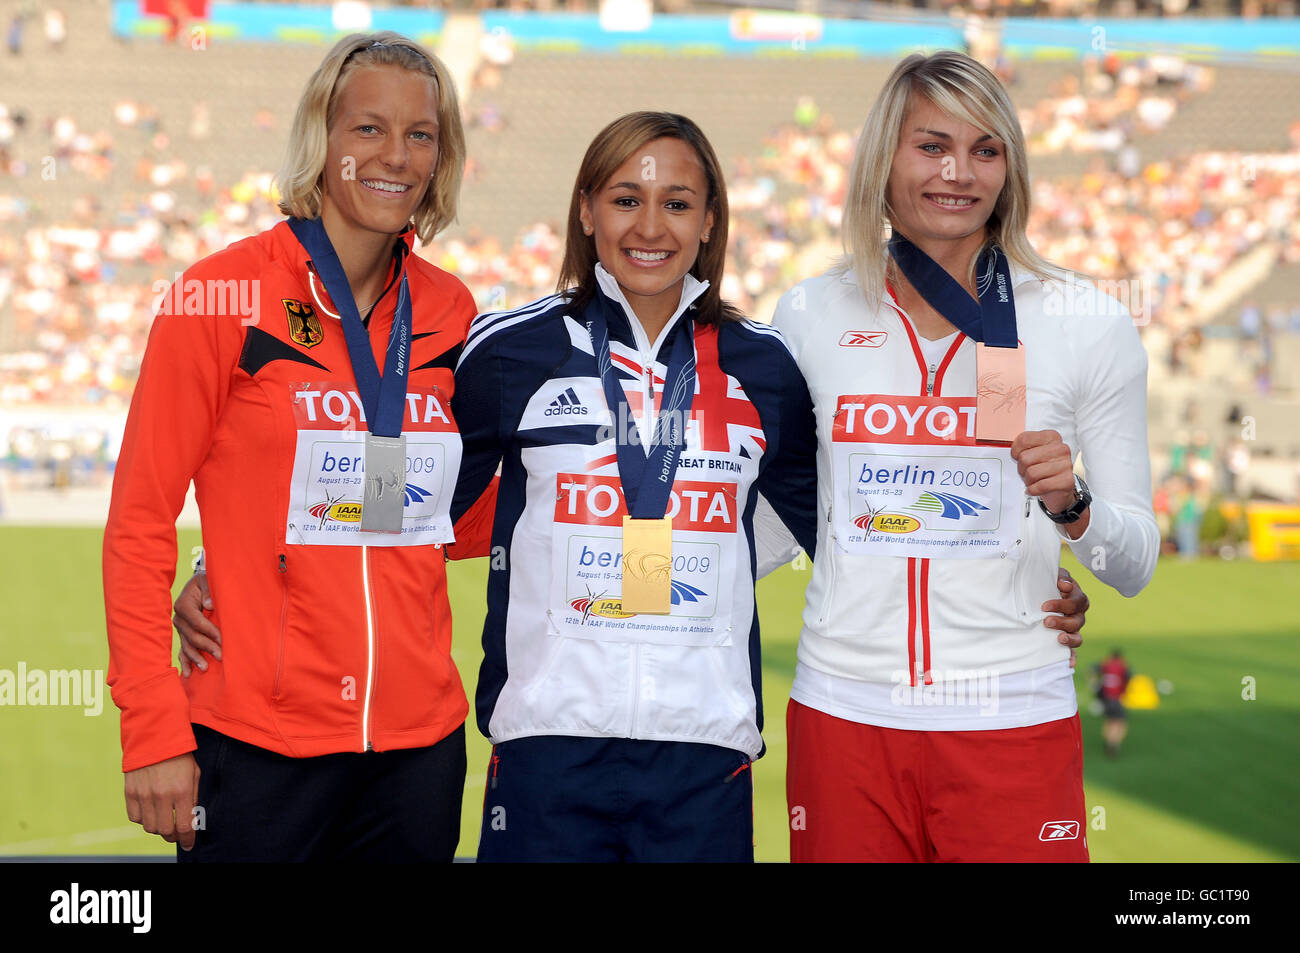 Jessica Ennis de Gran Bretaña con su Medalla de Oro por el Heptathlon de la Mujer, junto a Jennifer Oeser de Alemania (plata) y Kamila Chudzik de Polonia (bronce) Foto de stock